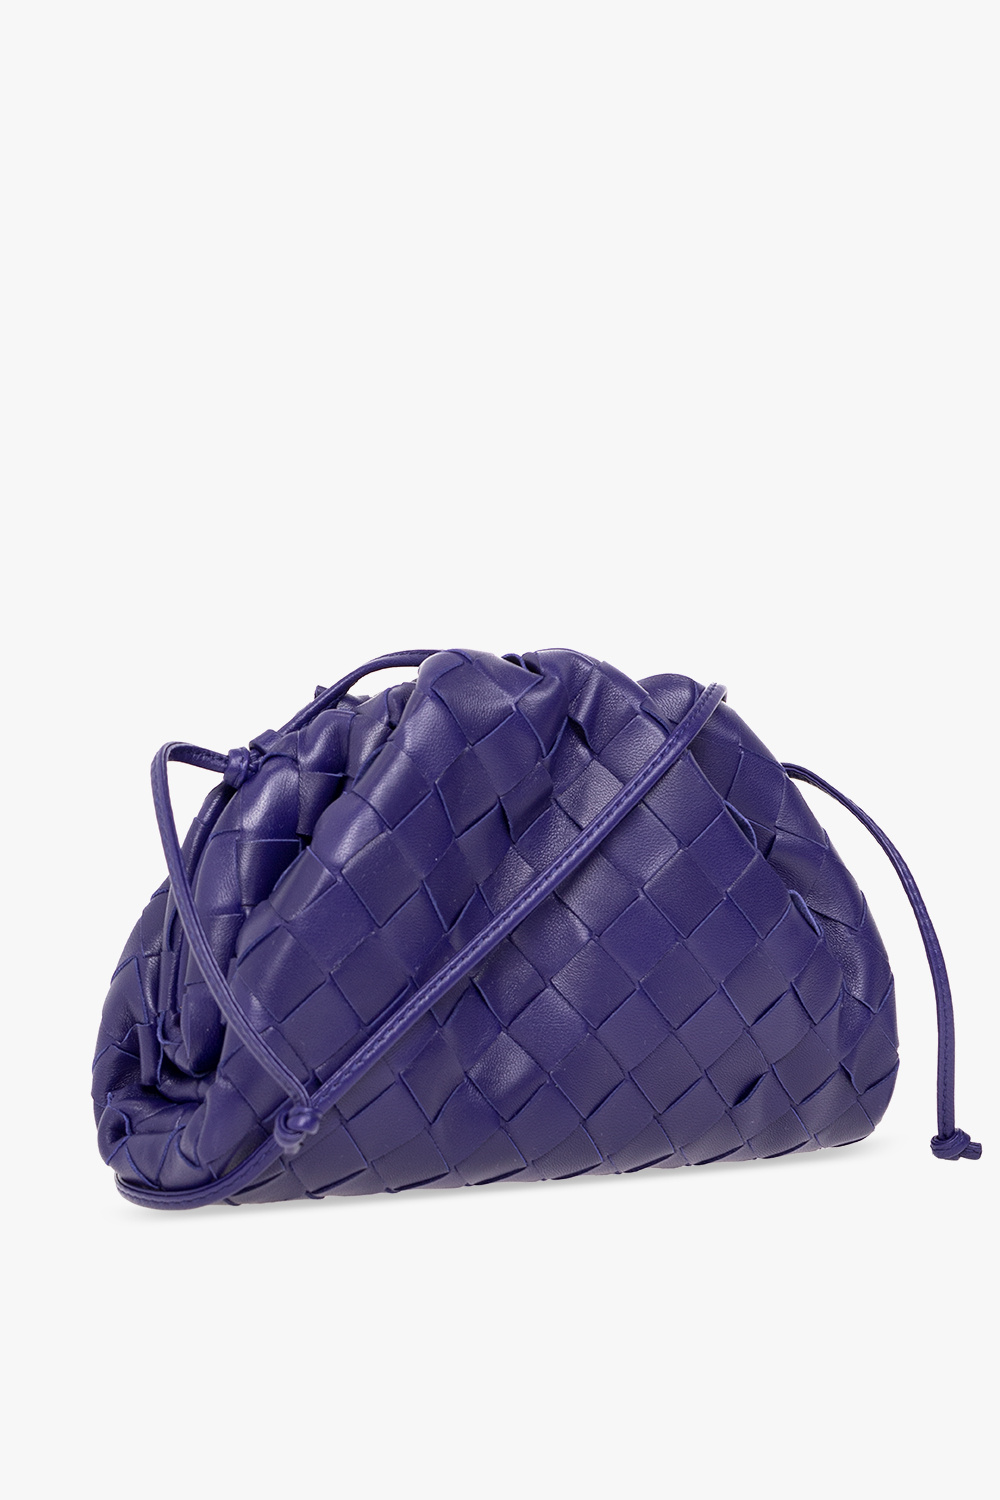 PU Leather Two-Piece Bag Set – Lavender Latte Boutique